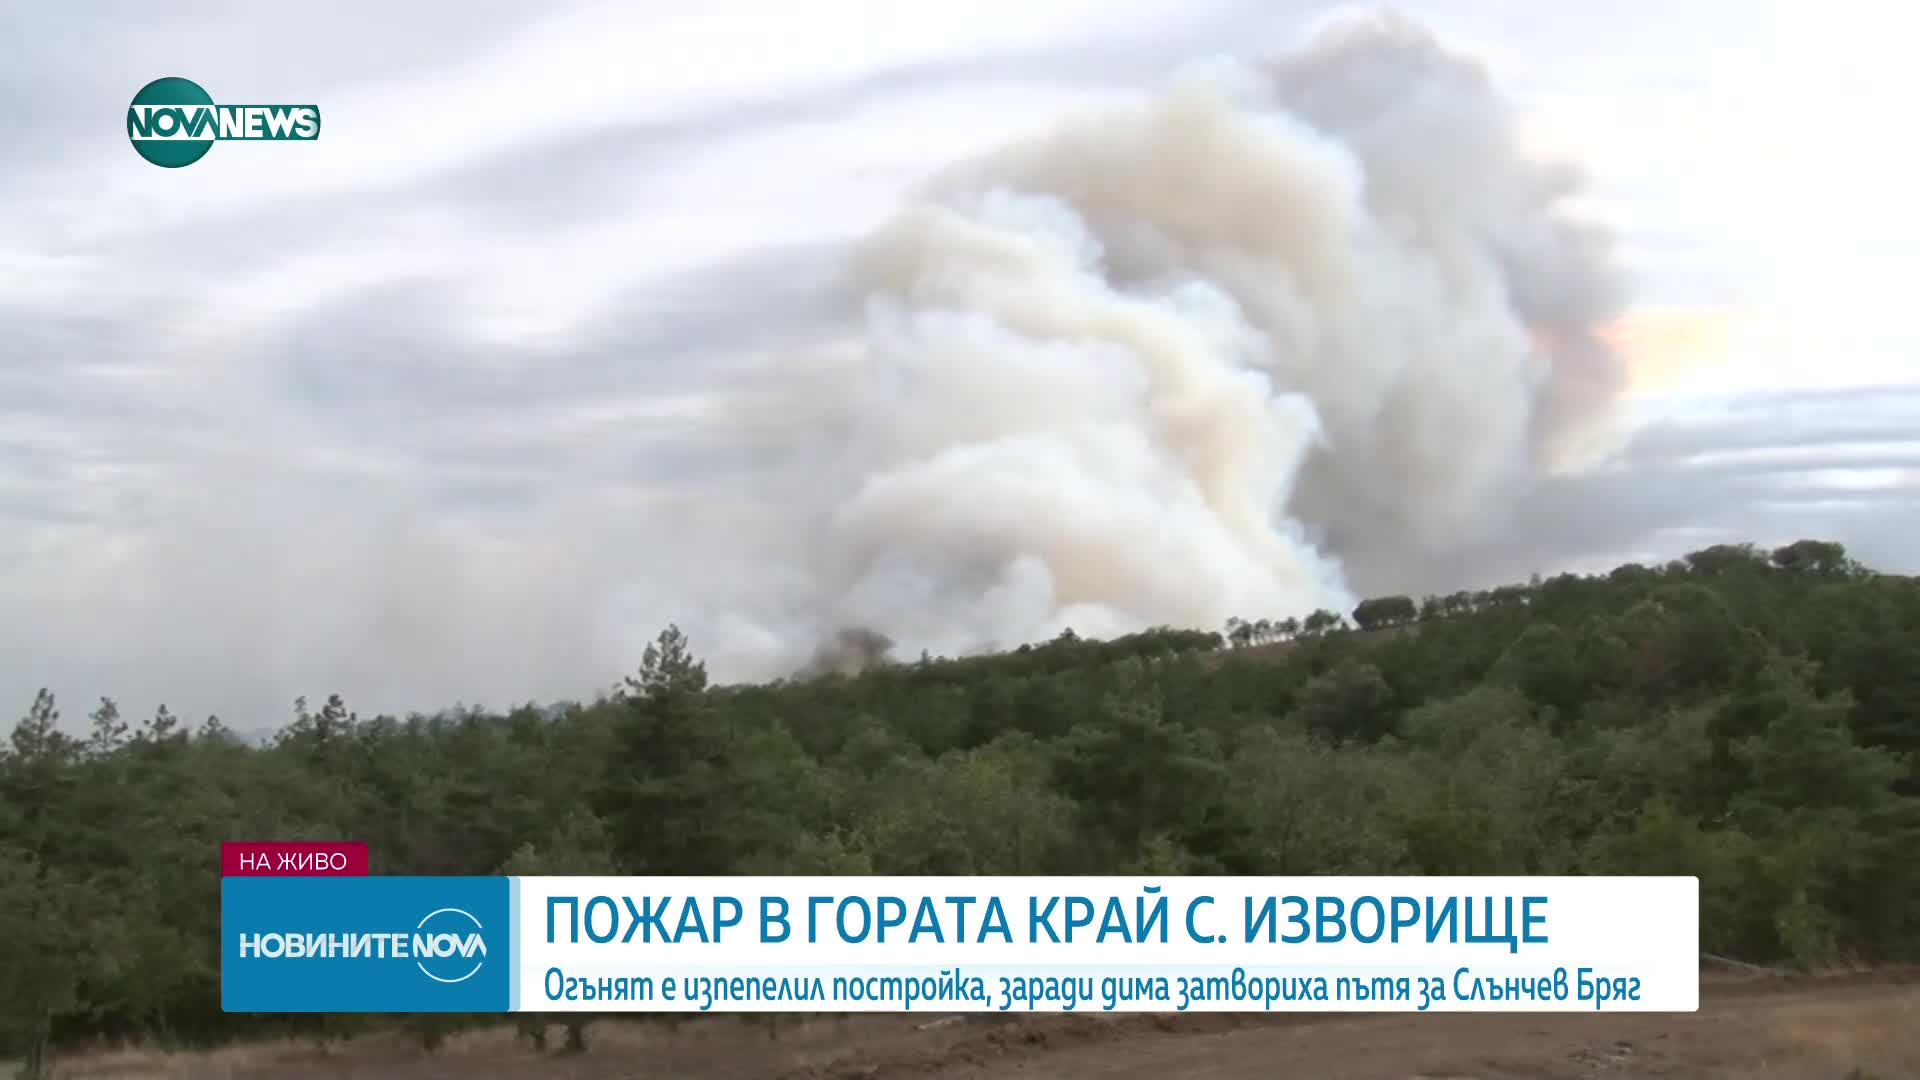 Пожар обхвана гора край бургаски села